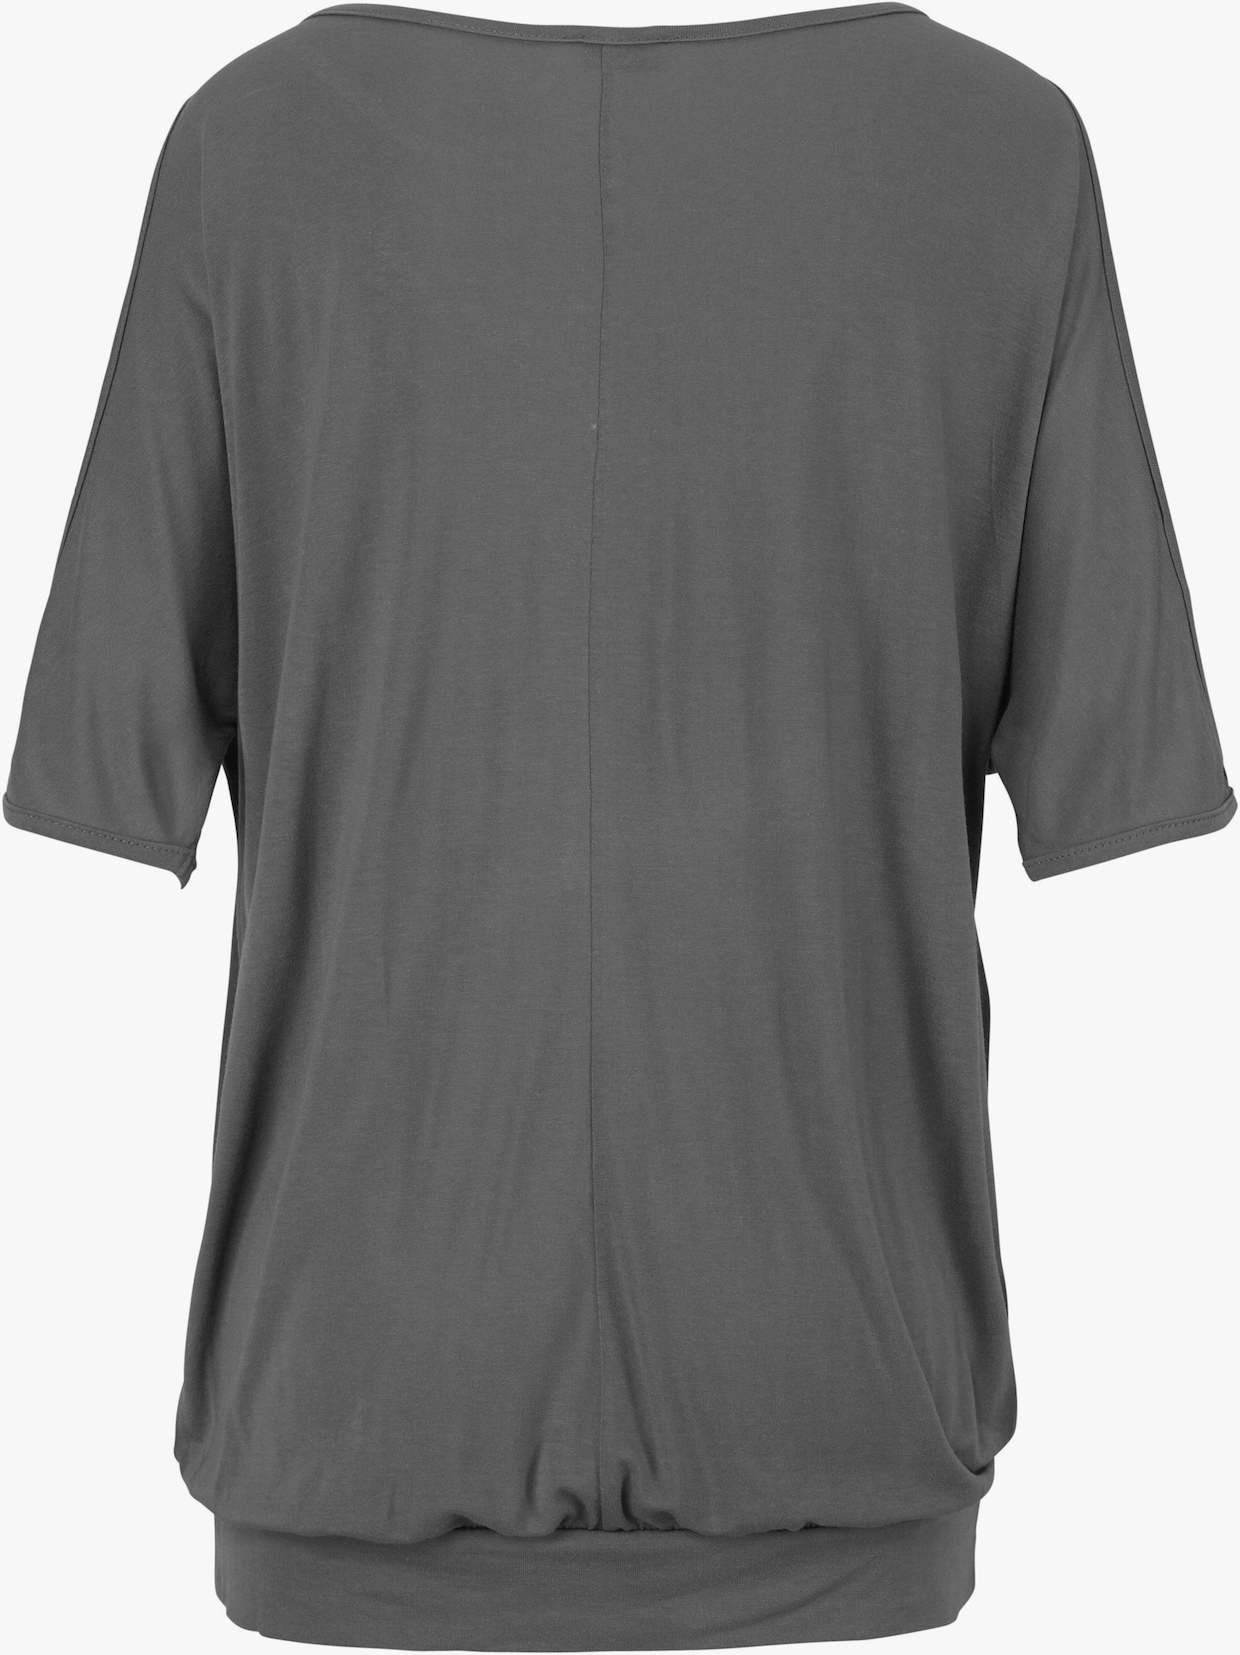 LASCANA Strandshirt - grau-bedruckt